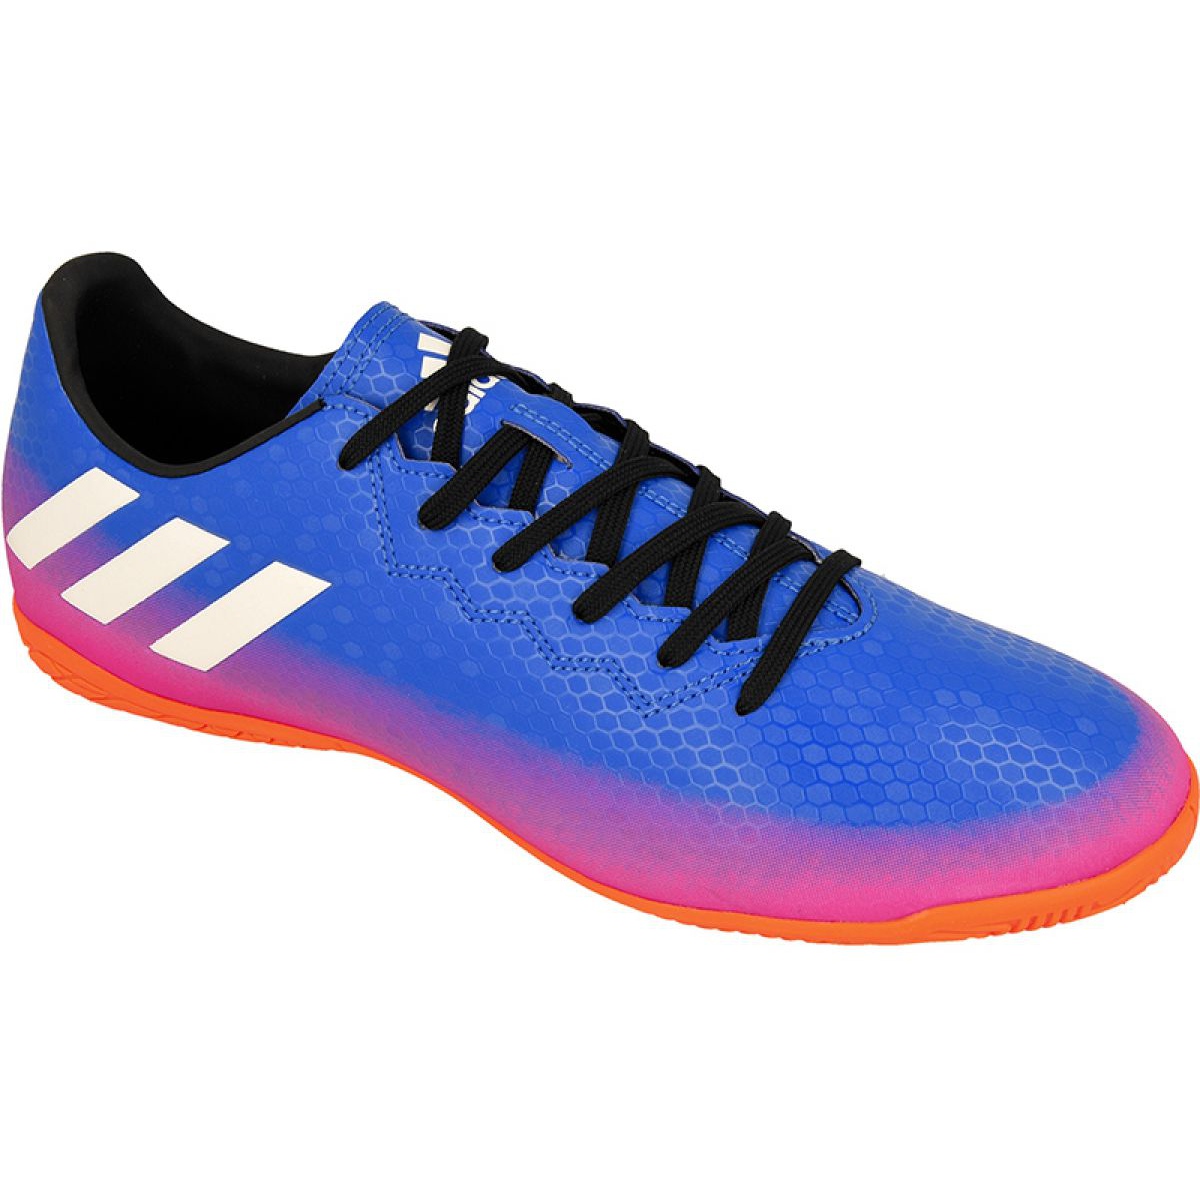 Indendørs sko adidas Messi 16.4 I M BA9027 blå - KeeShoes